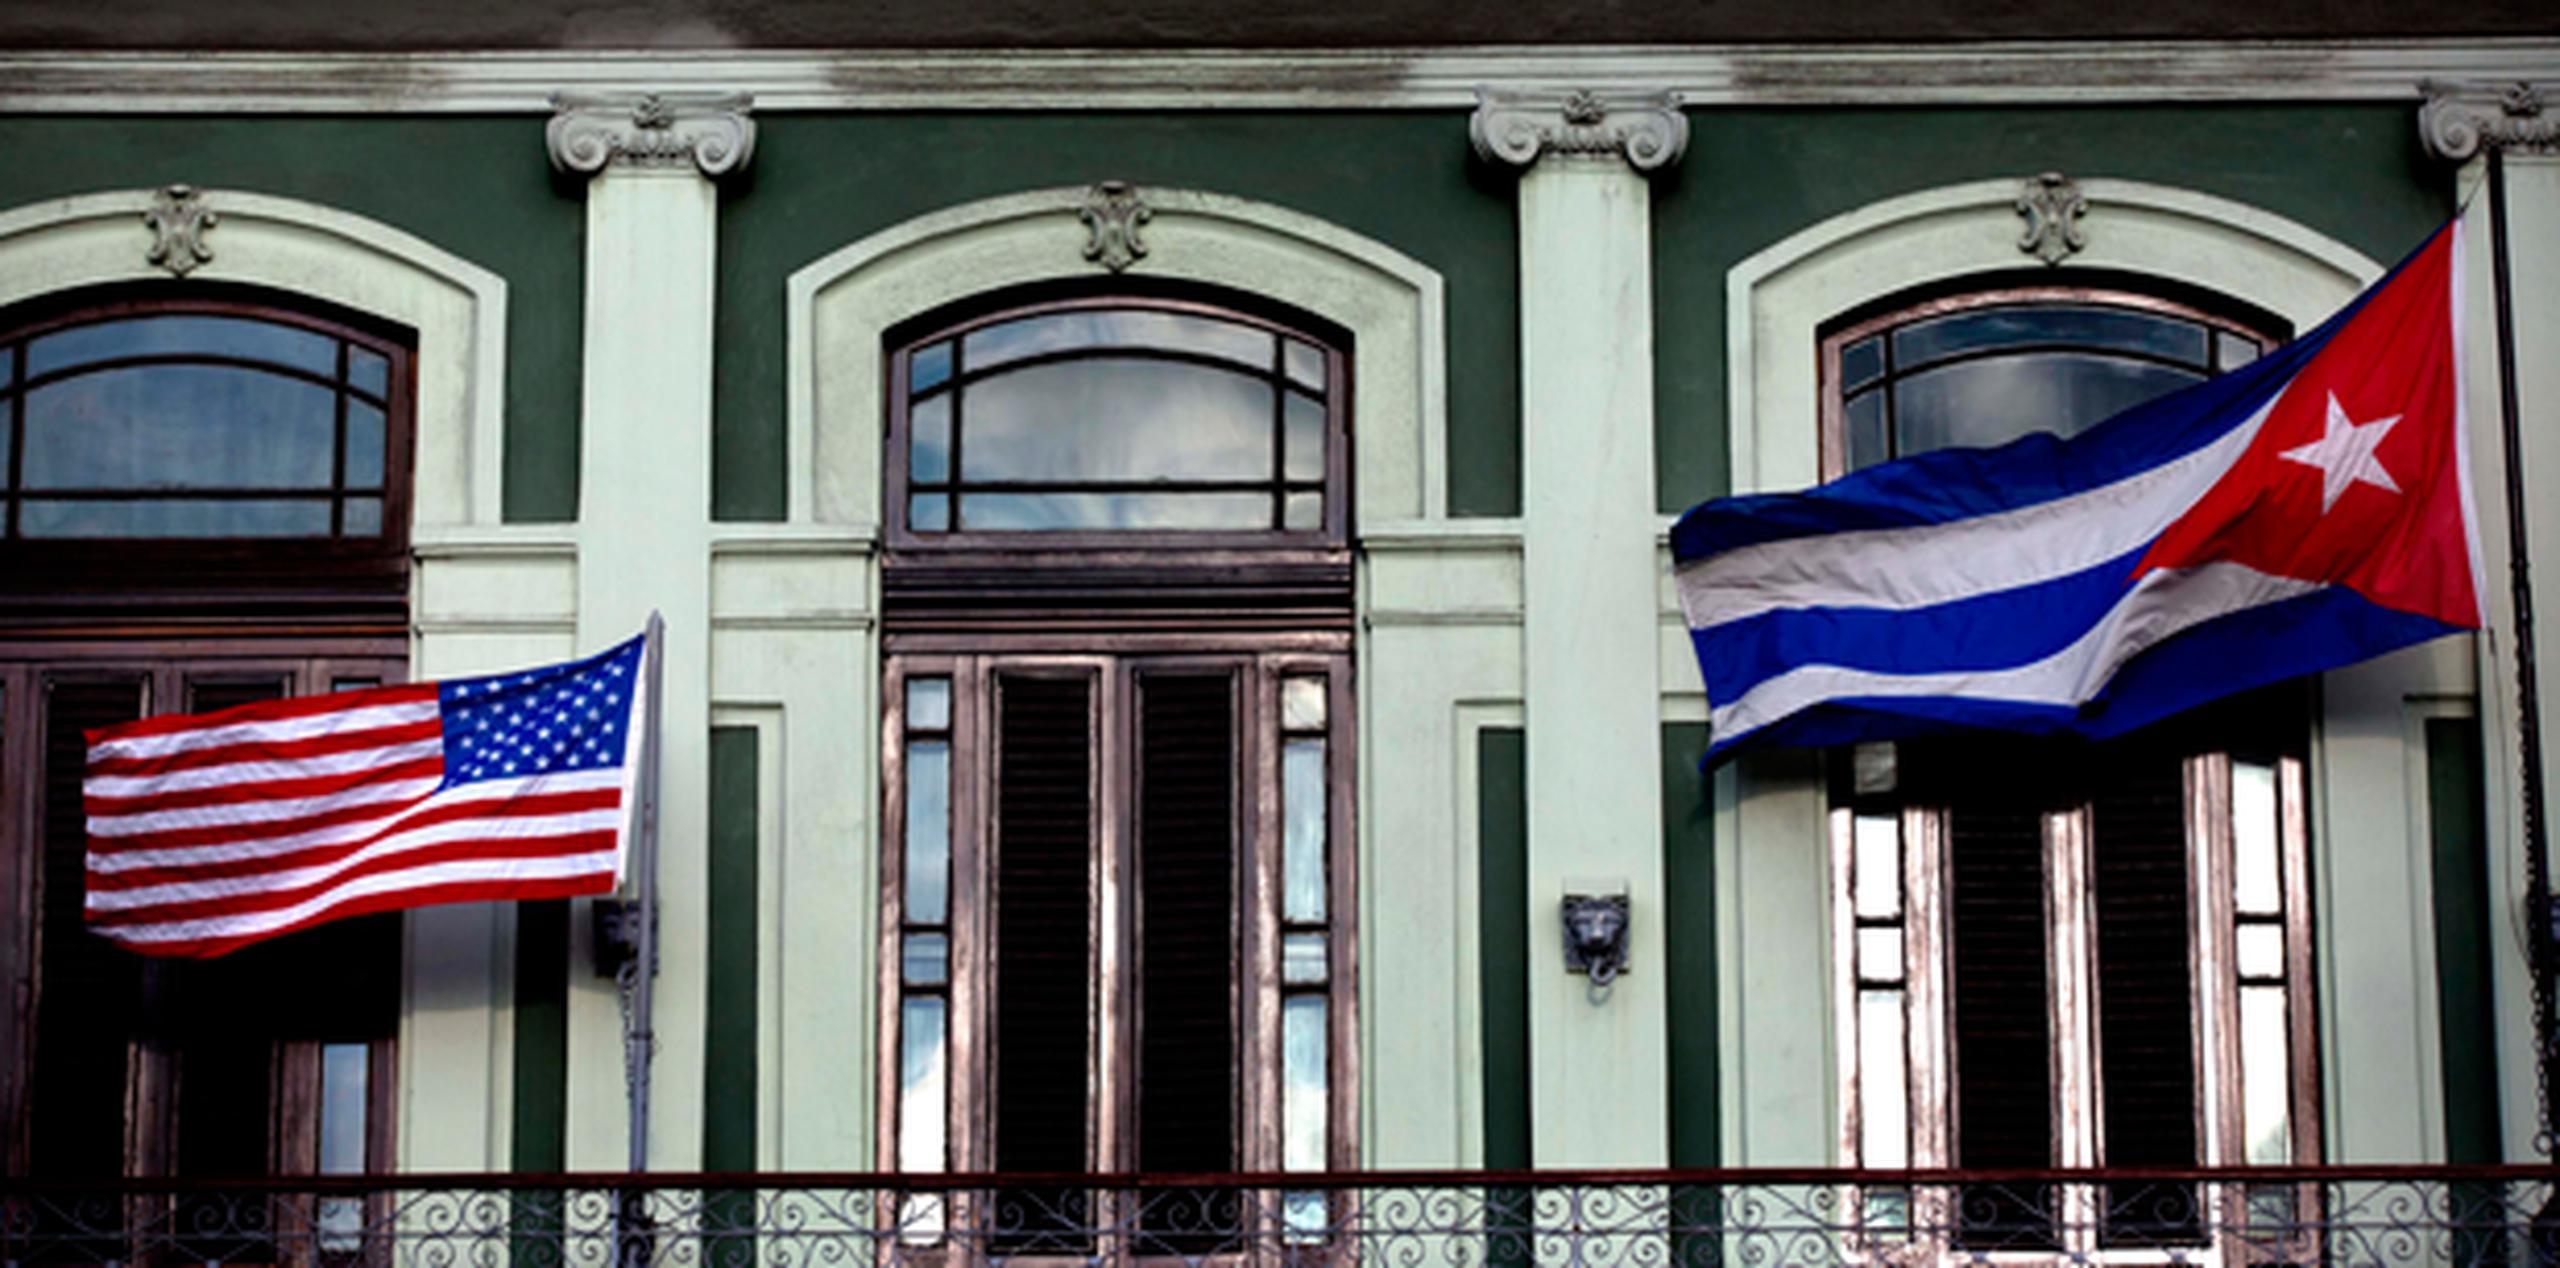 Aunque la apertura de embajadas marca un hito importante en la distensión entre Cuba y Estados Unidos, aún existen temas pendientes significativos en el camino a la normalización de relaciones. (AP)